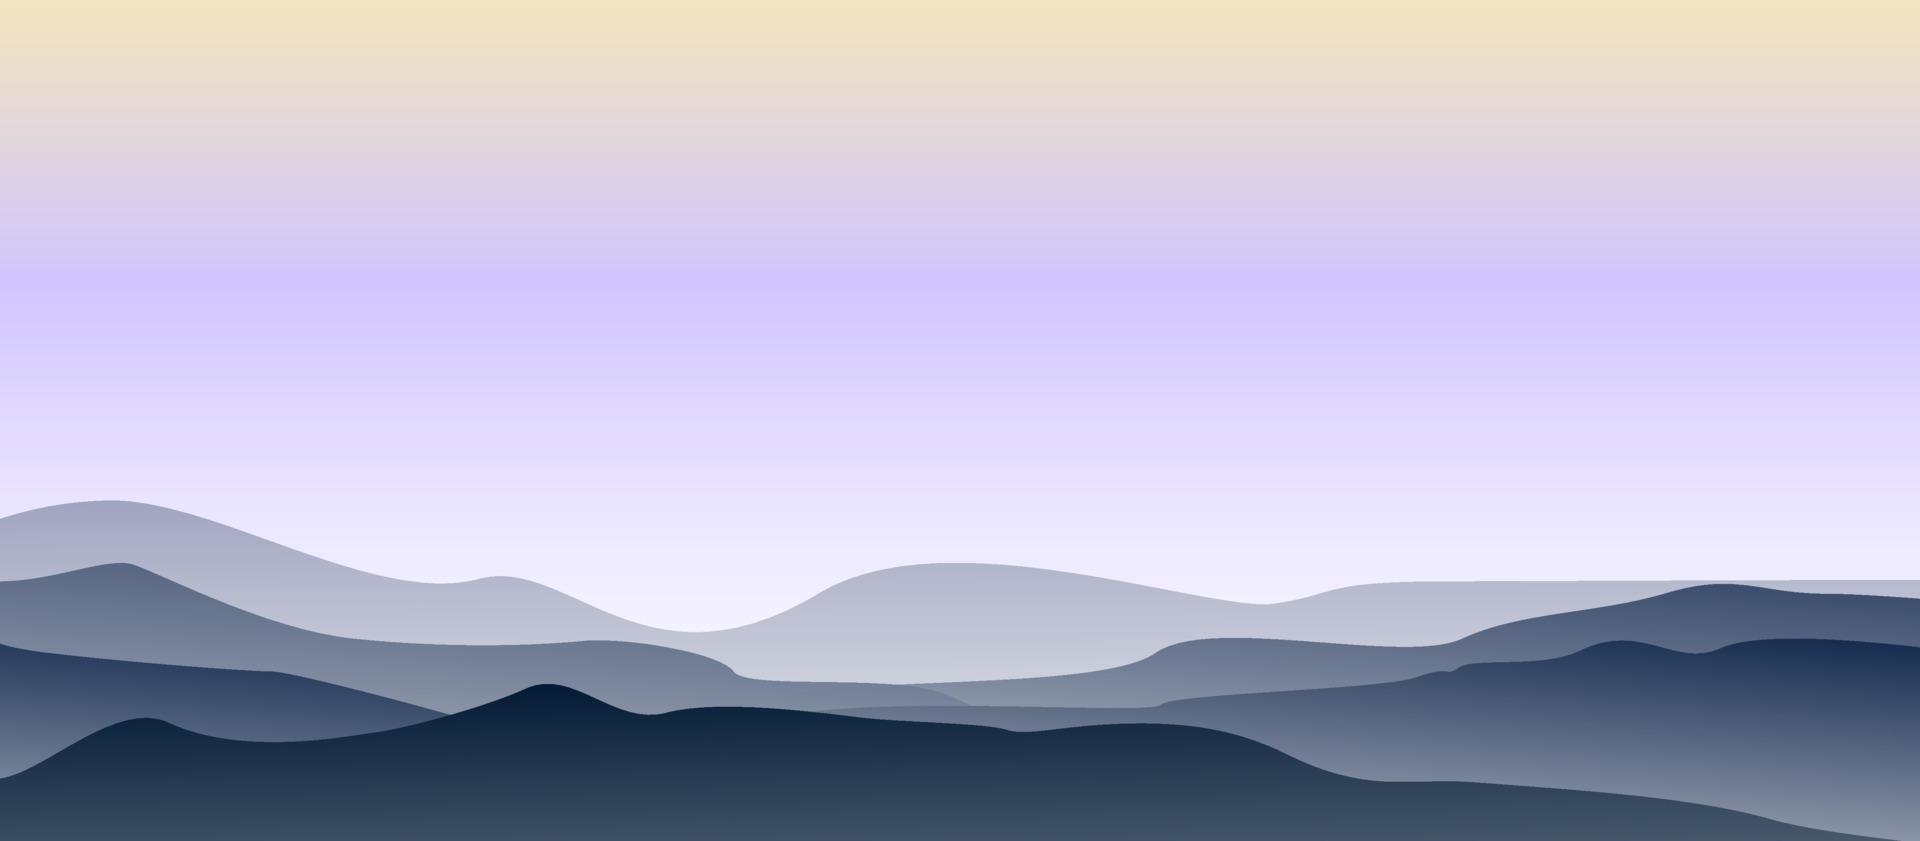 ilustração plana de paisagem de montanha vetor